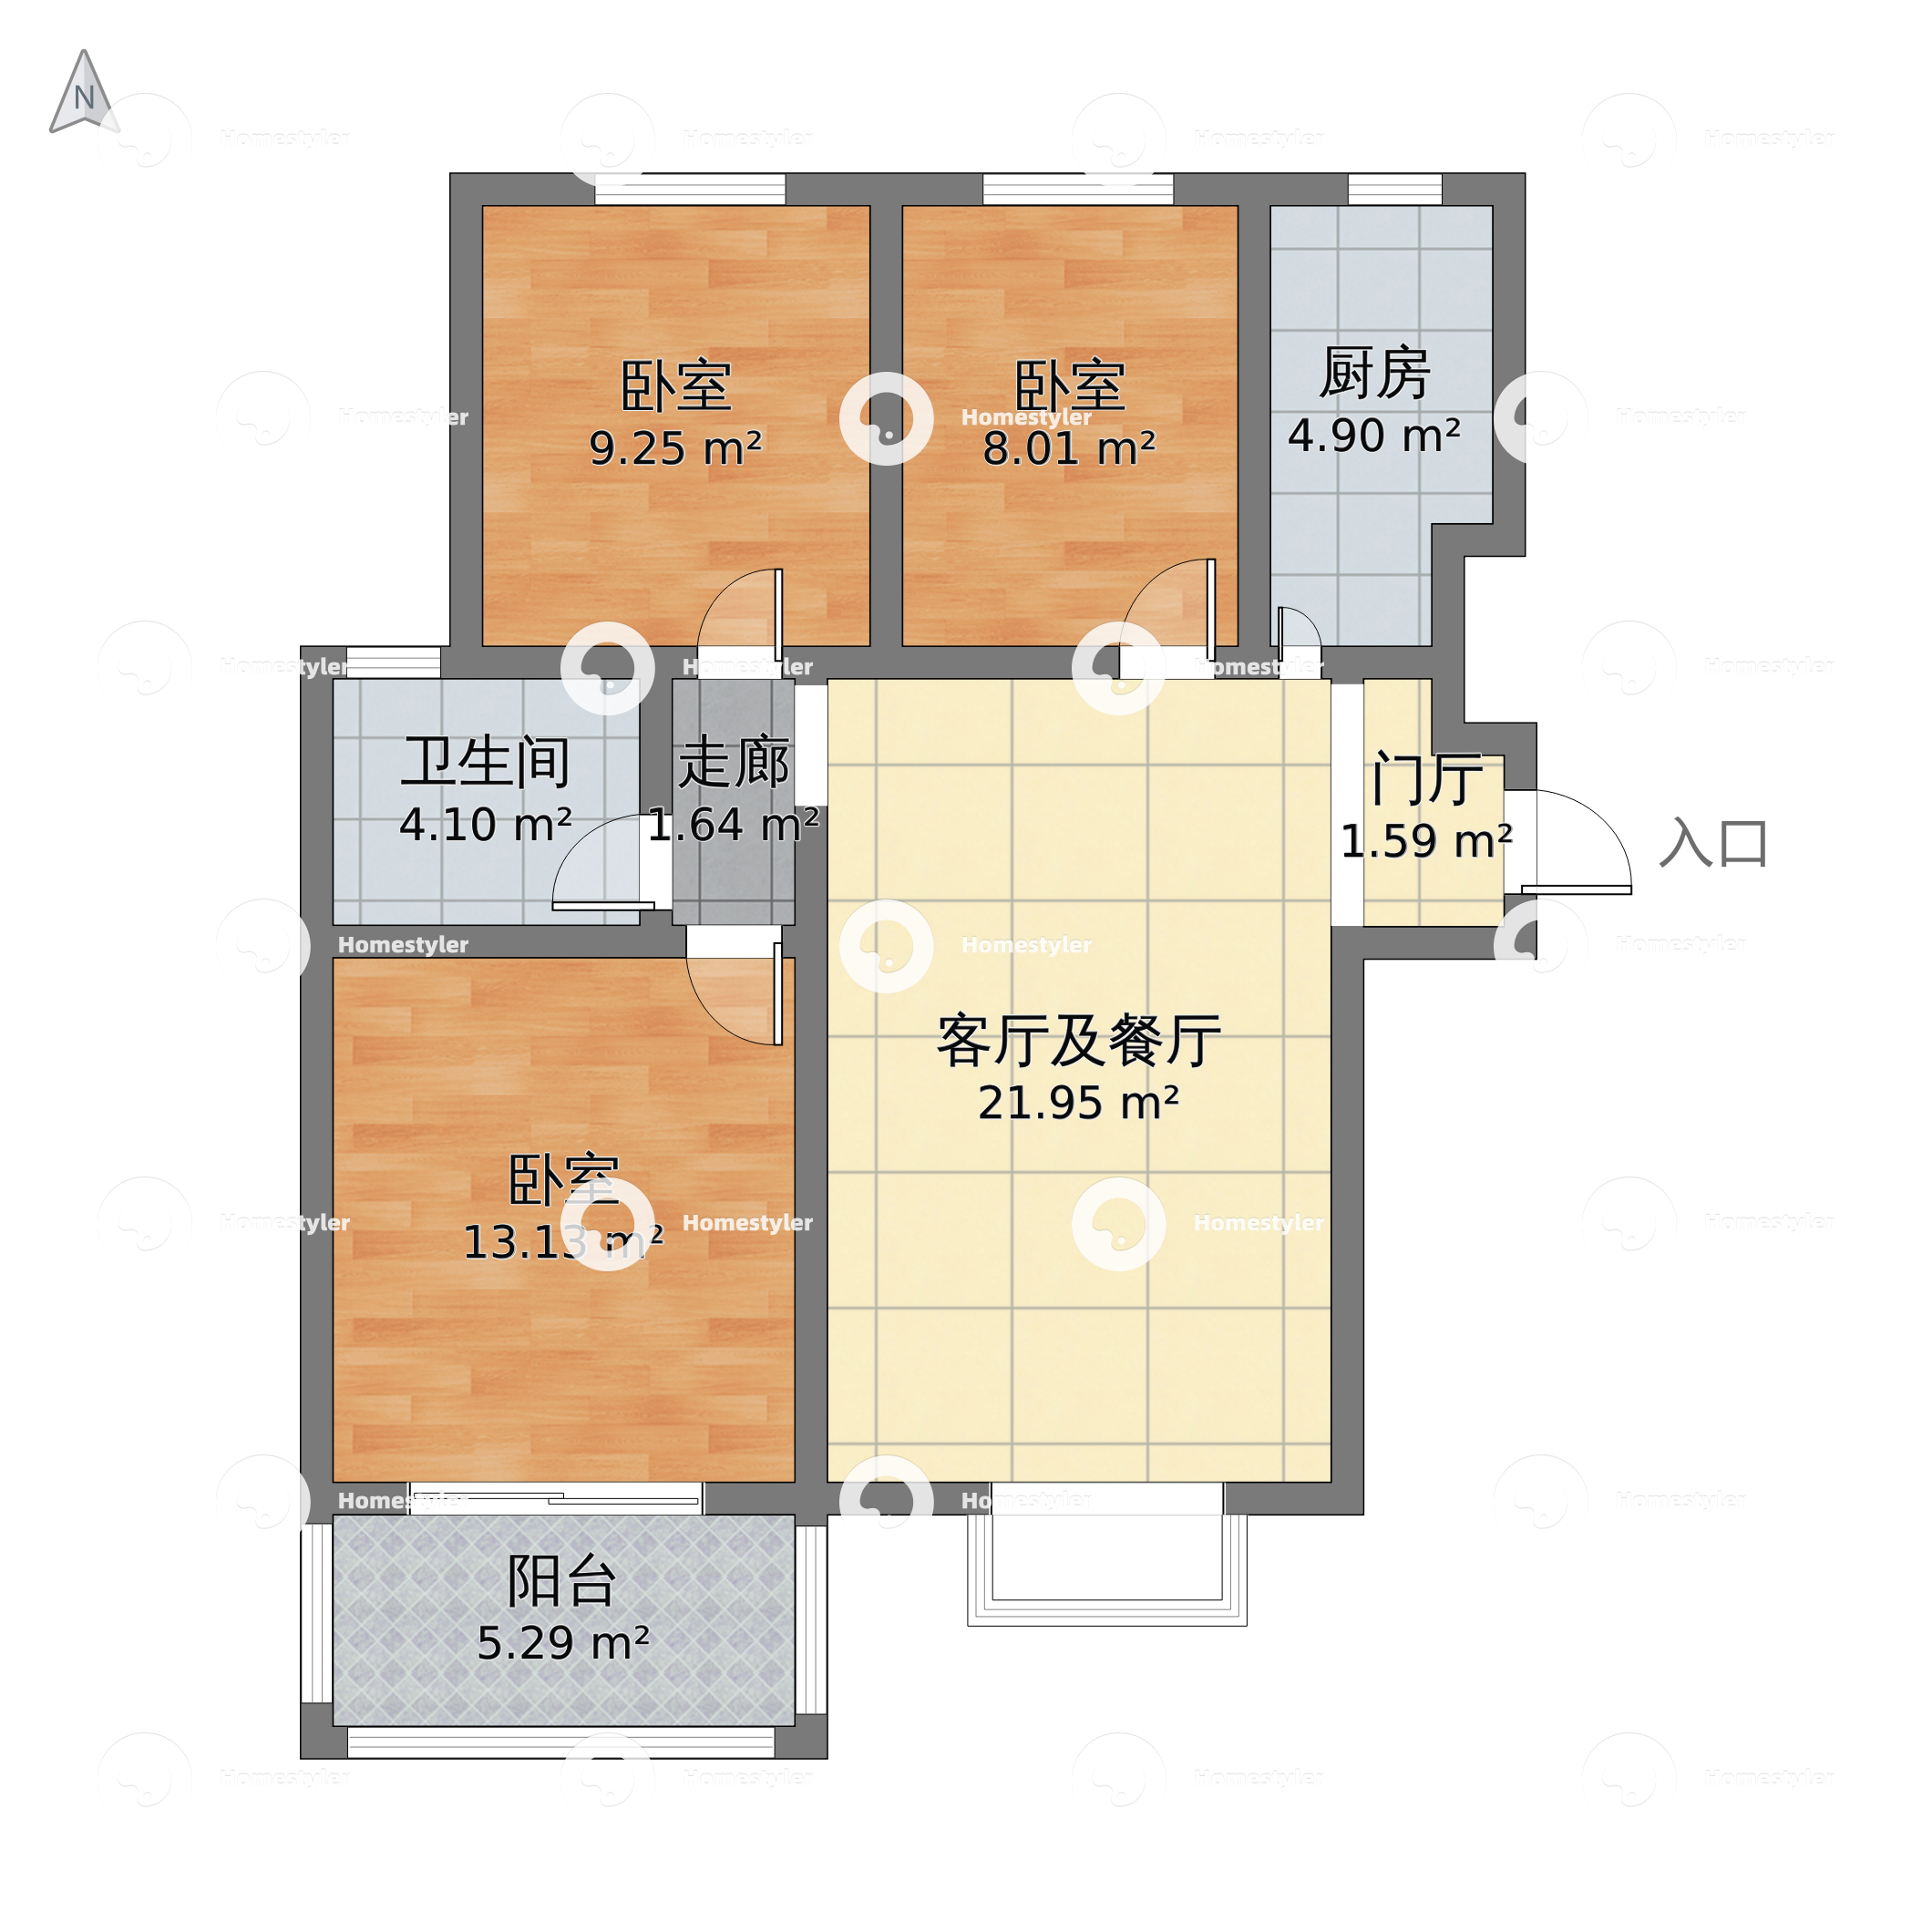 上海市静安区 中海万锦城3室1厅2卫 169m²-v2户型图 - 小区户型图 -躺平设计家